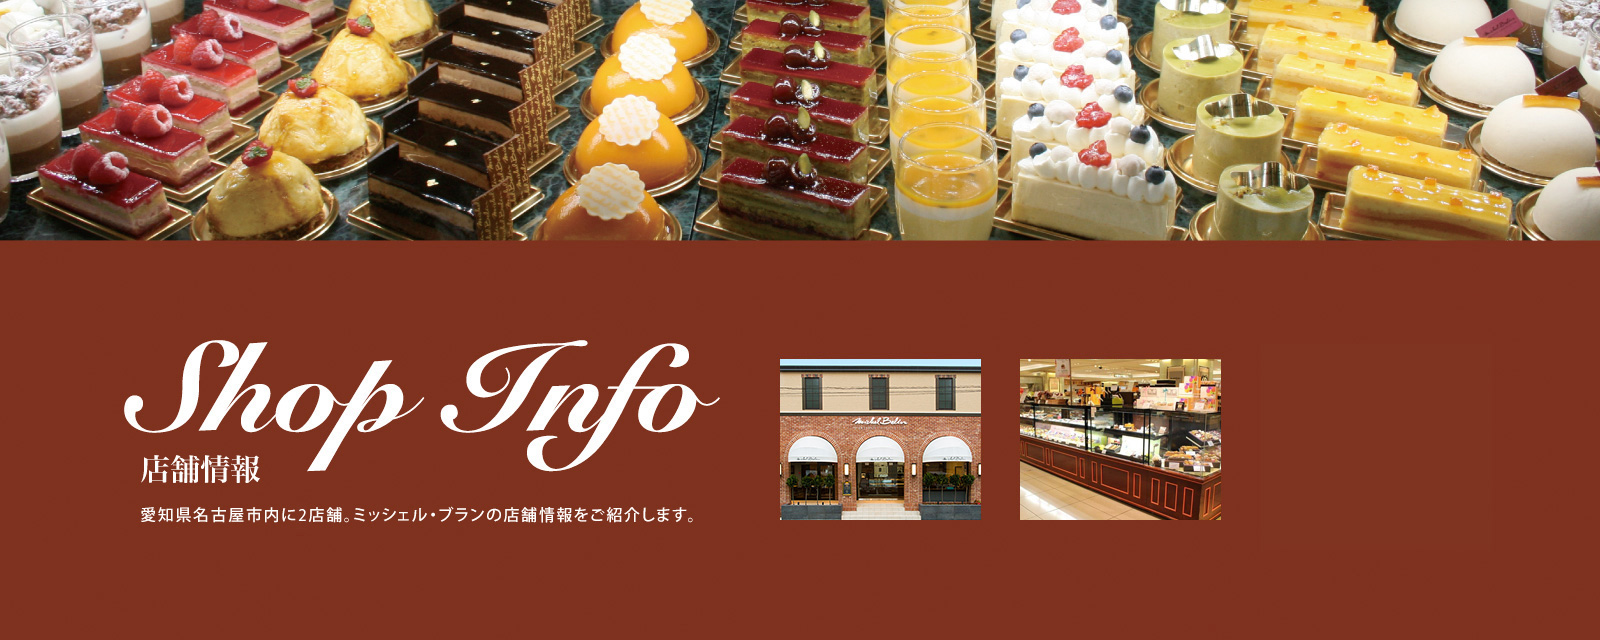 【店舗情報】名古屋市内に3店舗。ミッシェル・ブランの店舗情報をご紹介します。